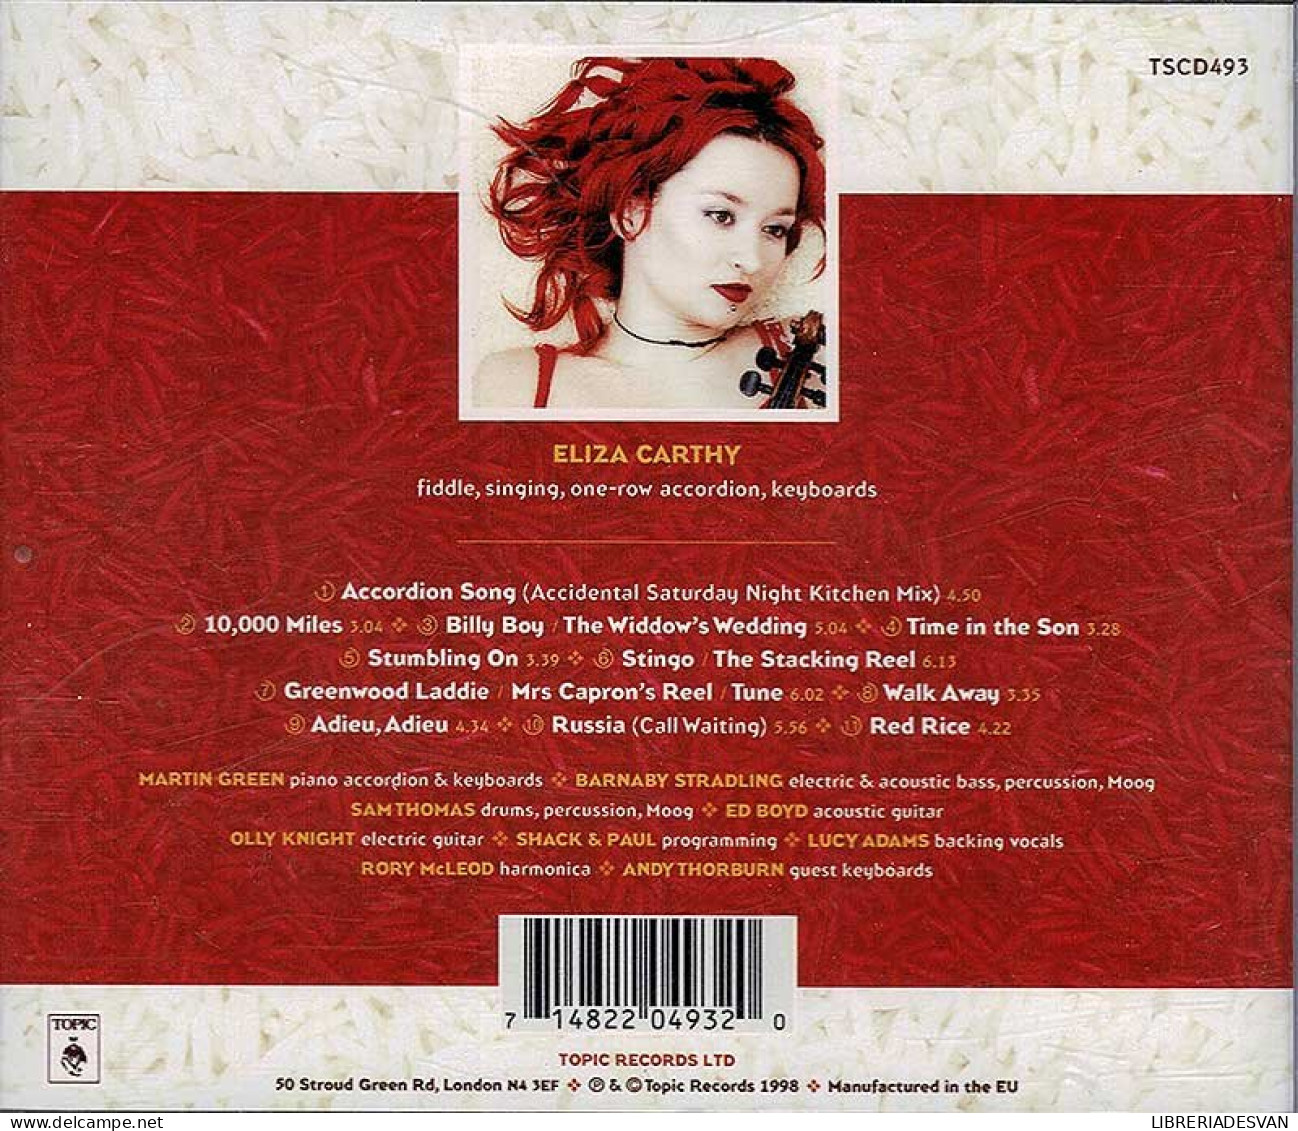 Eliza Carthy - Red. CD - Country Y Folk